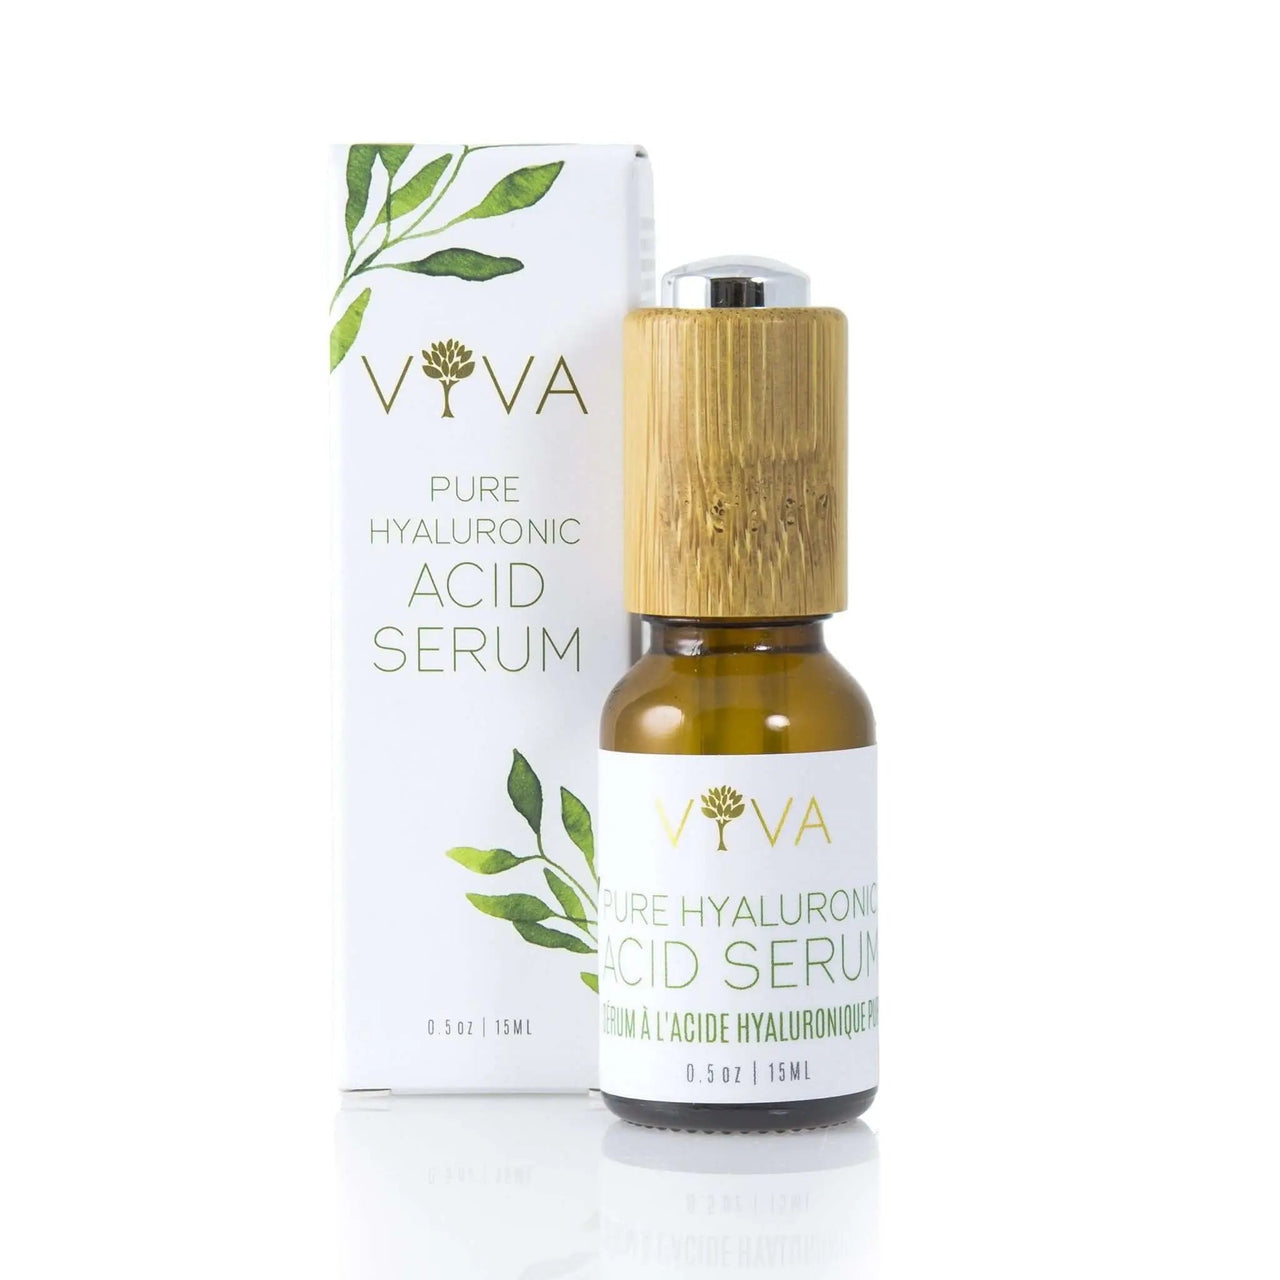 Viva Pure Hyaluronic Acid Serum 15mL - Nutrition Plus